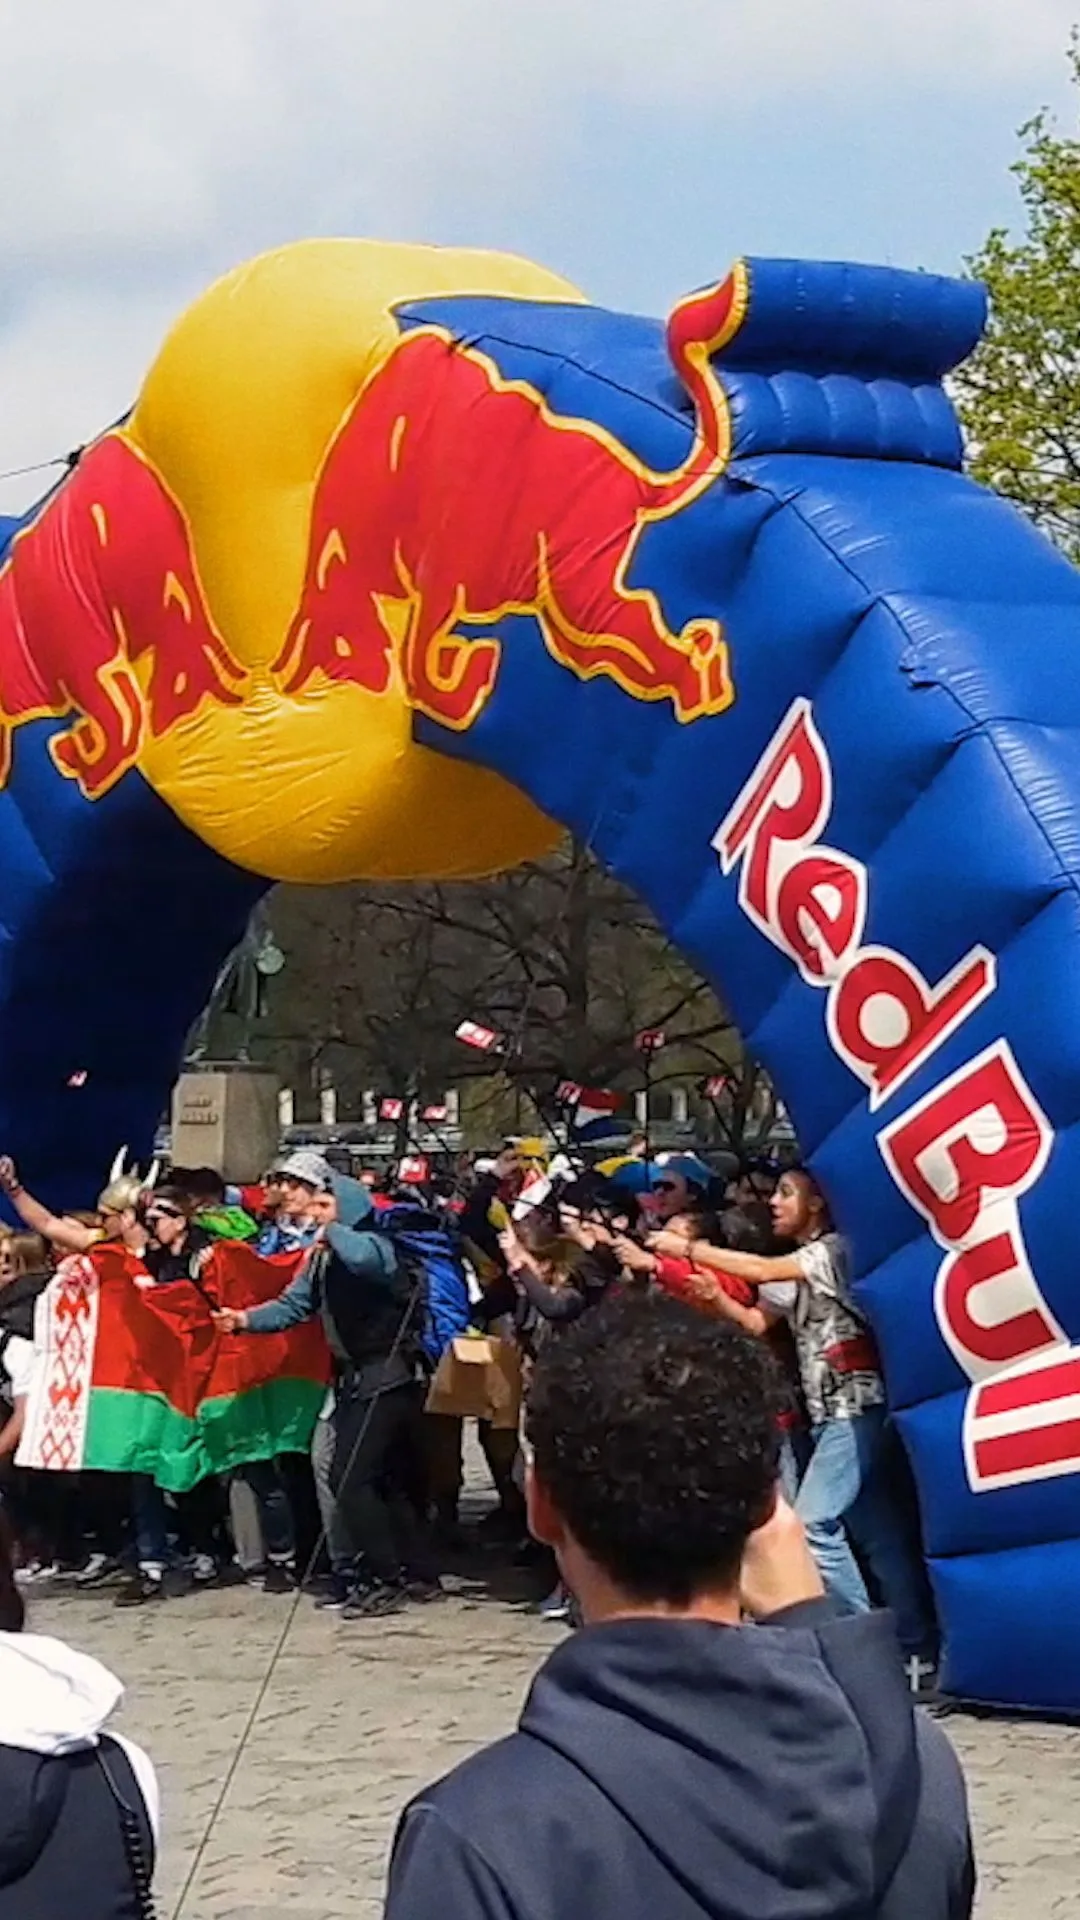 Red Bull Can You Make It - De uitdaging van het jaar